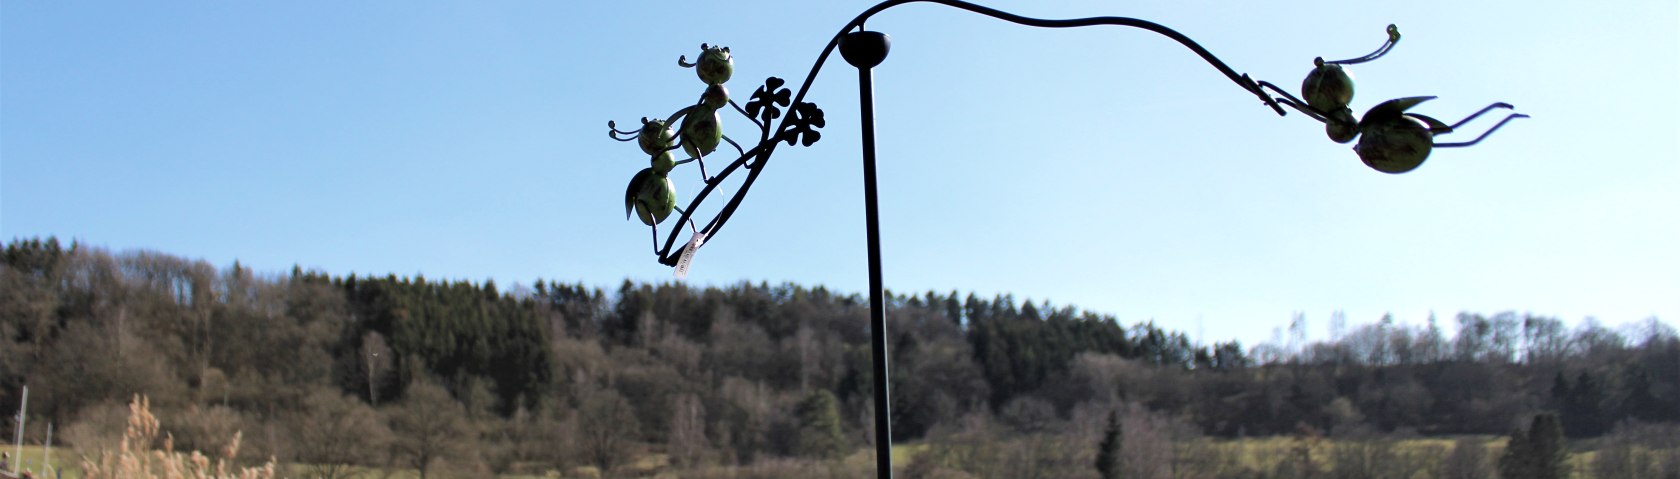 Windspiel Ameisen | Gartendekoration, © Rursee-Touristik GmbH / S. Herfort